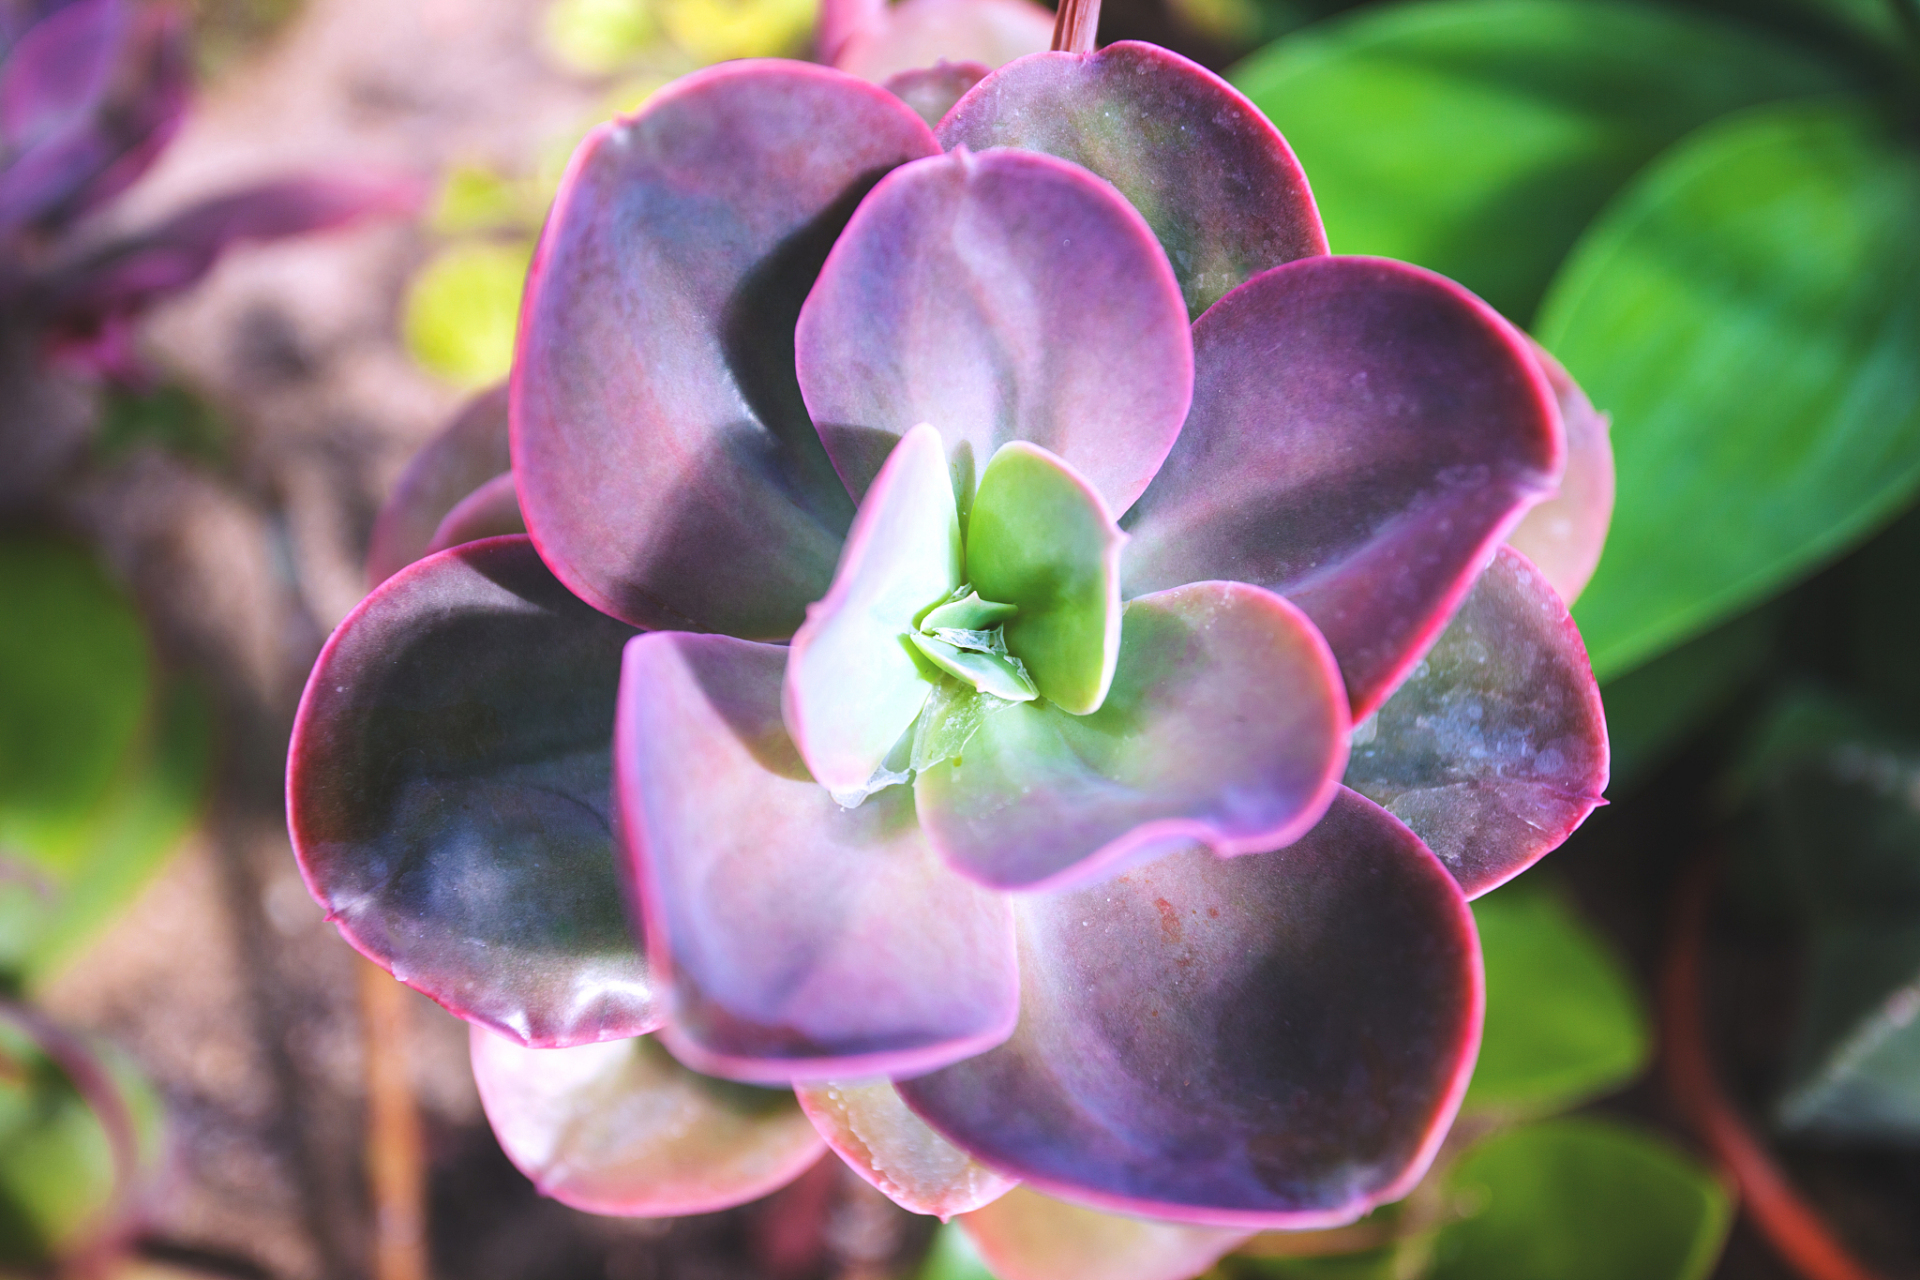 多肉紫珍珠,是一种美丽且受欢迎的多肉植物,它具有迷人的紫色叶片和